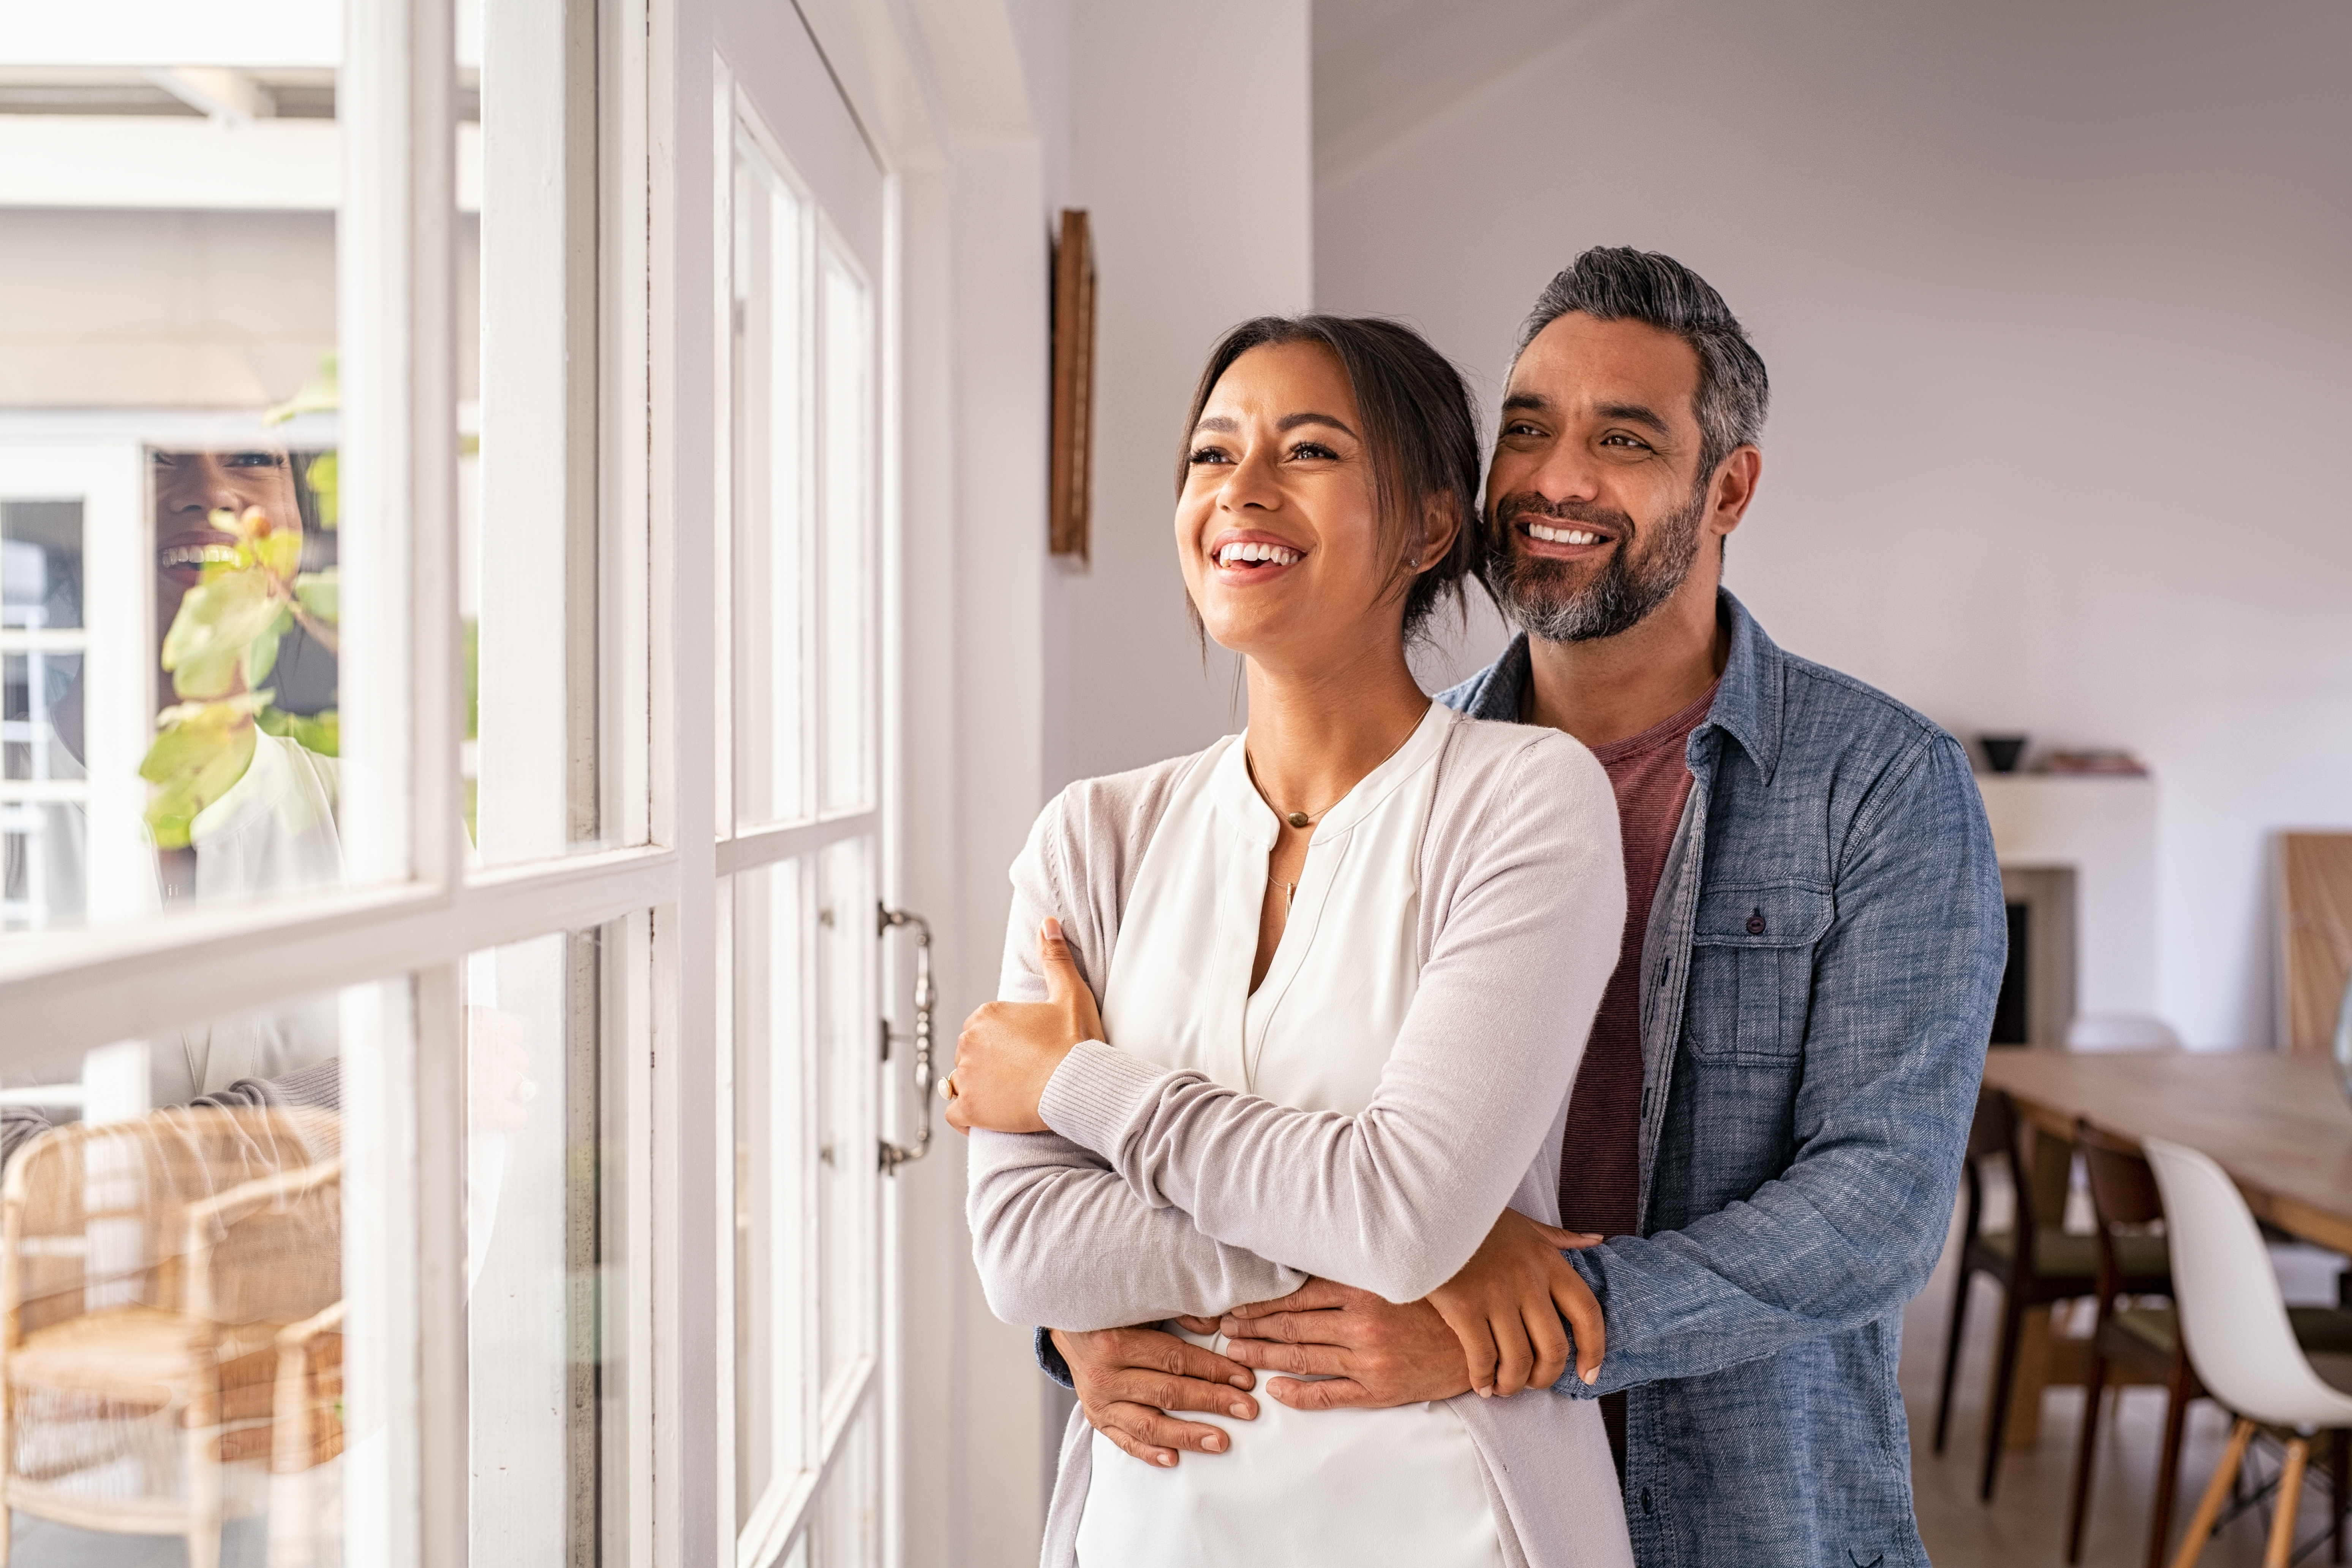 Ein Mann und eine Frau lächeln, während sie aus einem Fenster schauen | Quelle: Shutterstock